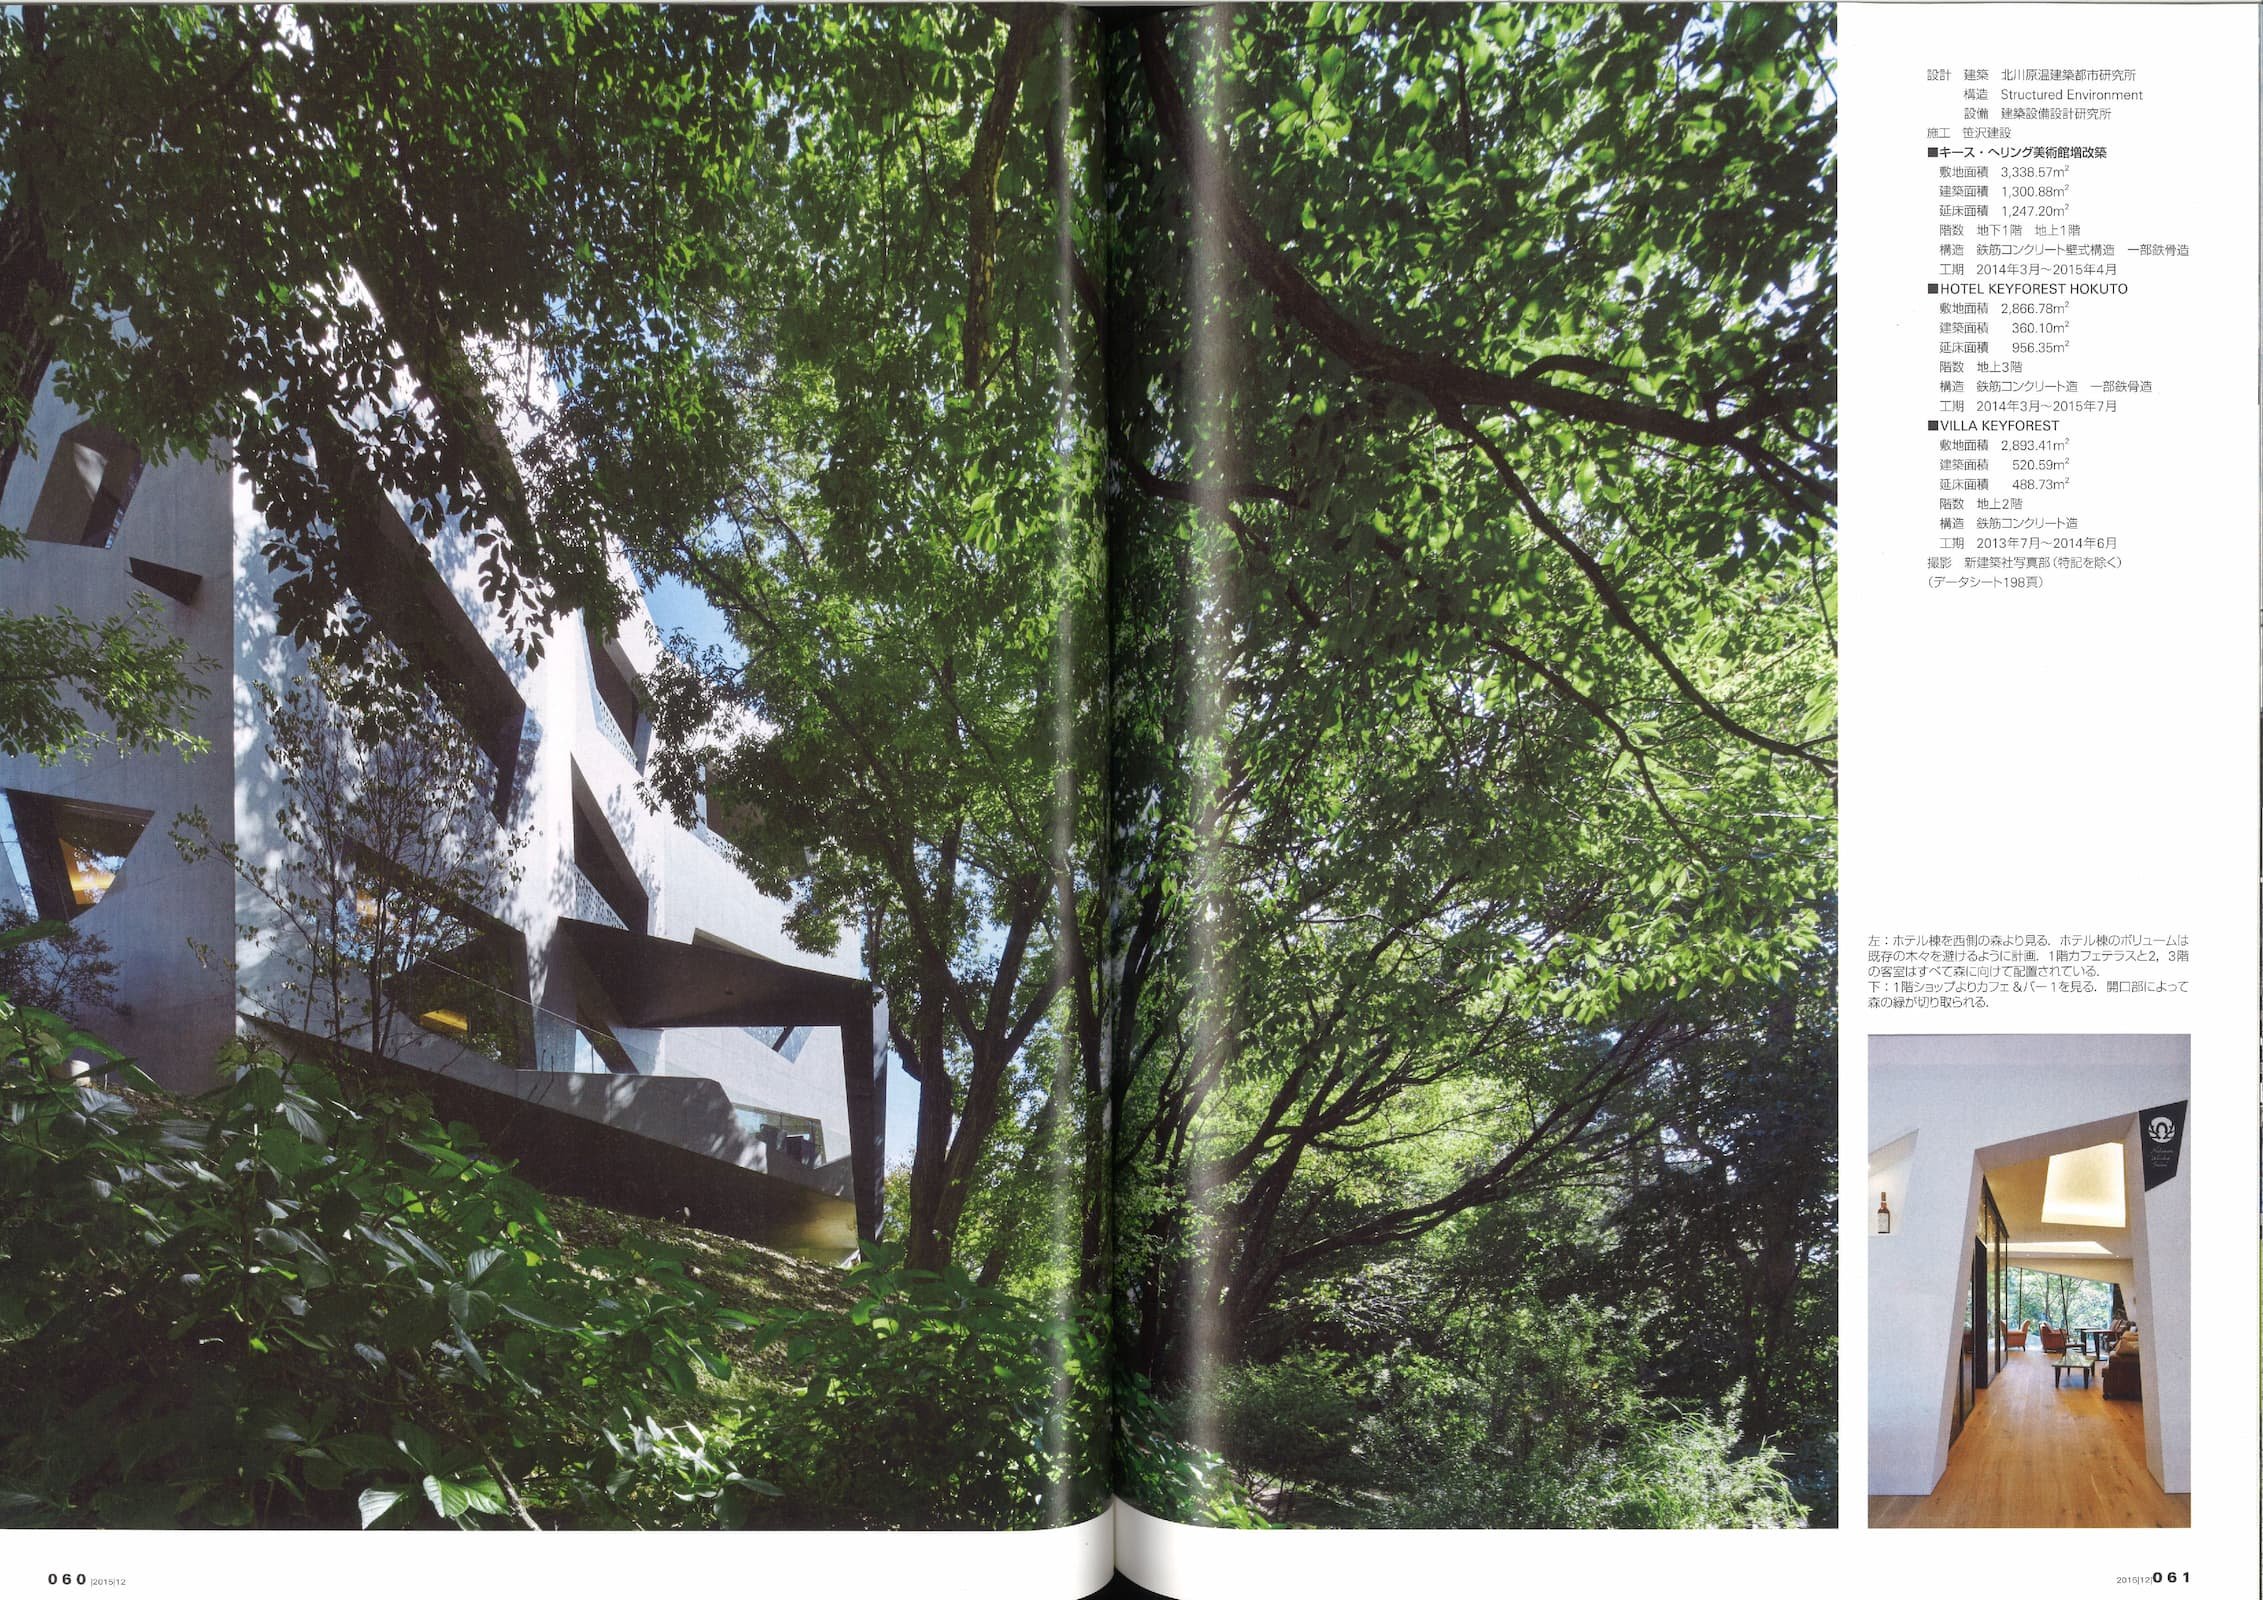 新建築 - New Architecture 90 - Nakamura Keith Haring Collection_Page_6.jpg